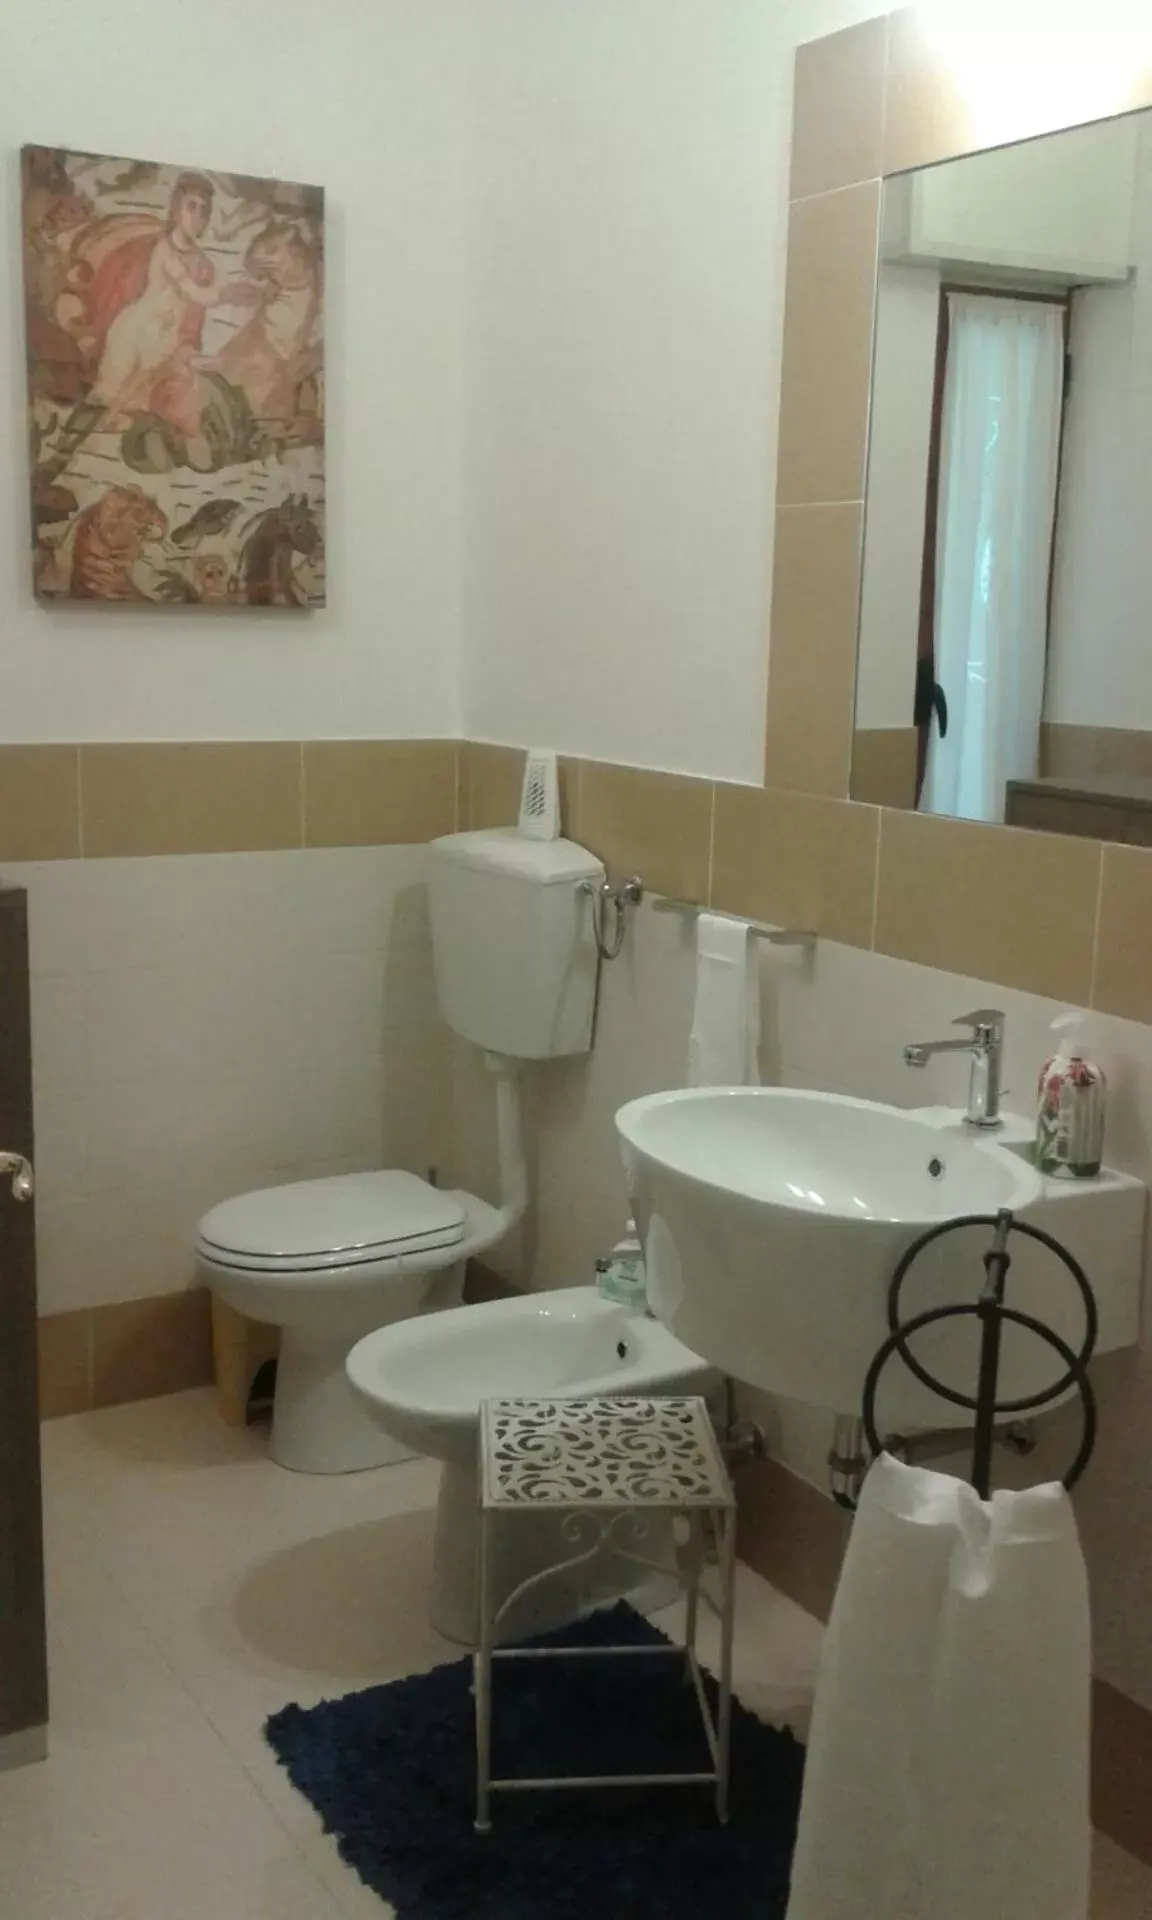 Bathroom in Stanze Barocche